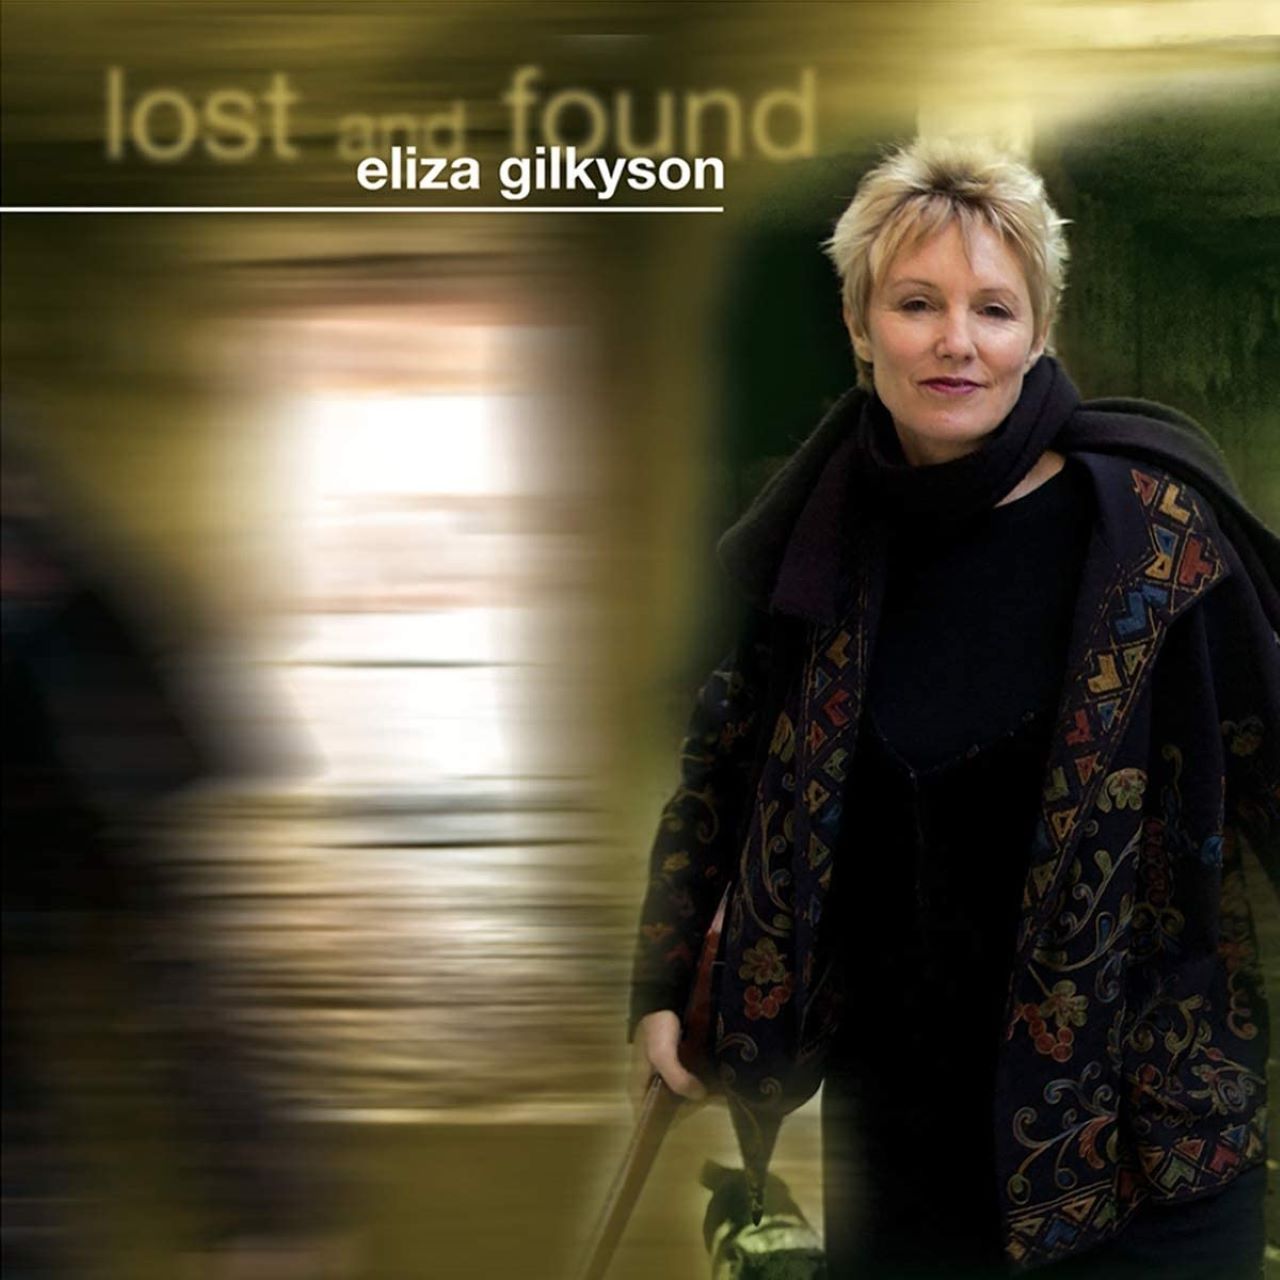 Eliza Gilkyson - Lost And Found cover album